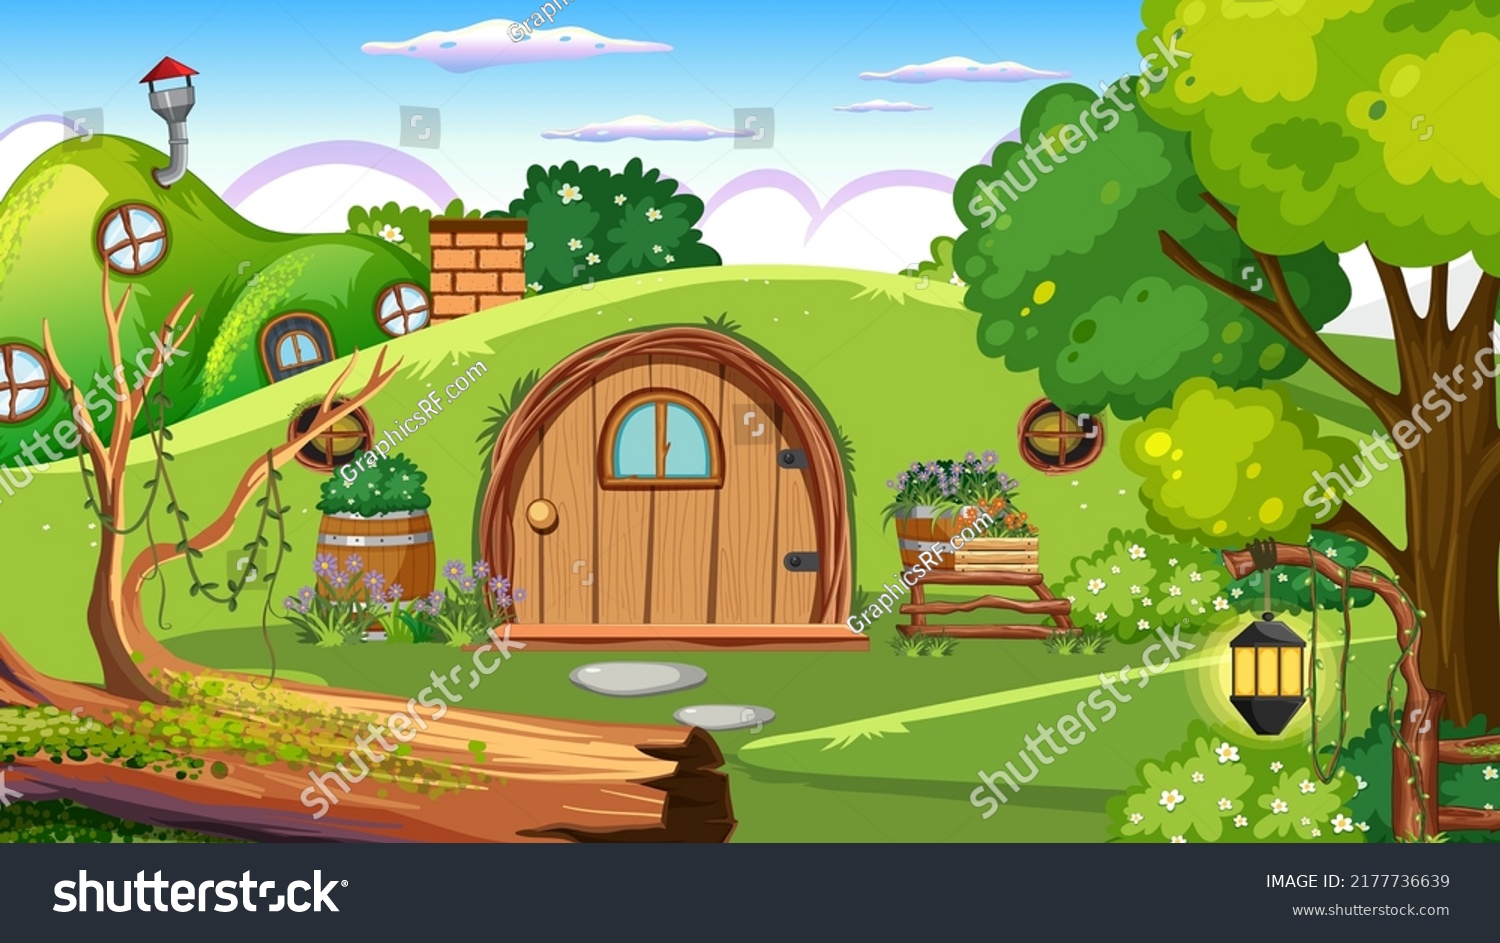 SVG of Hobbit house in the forest illustration svg